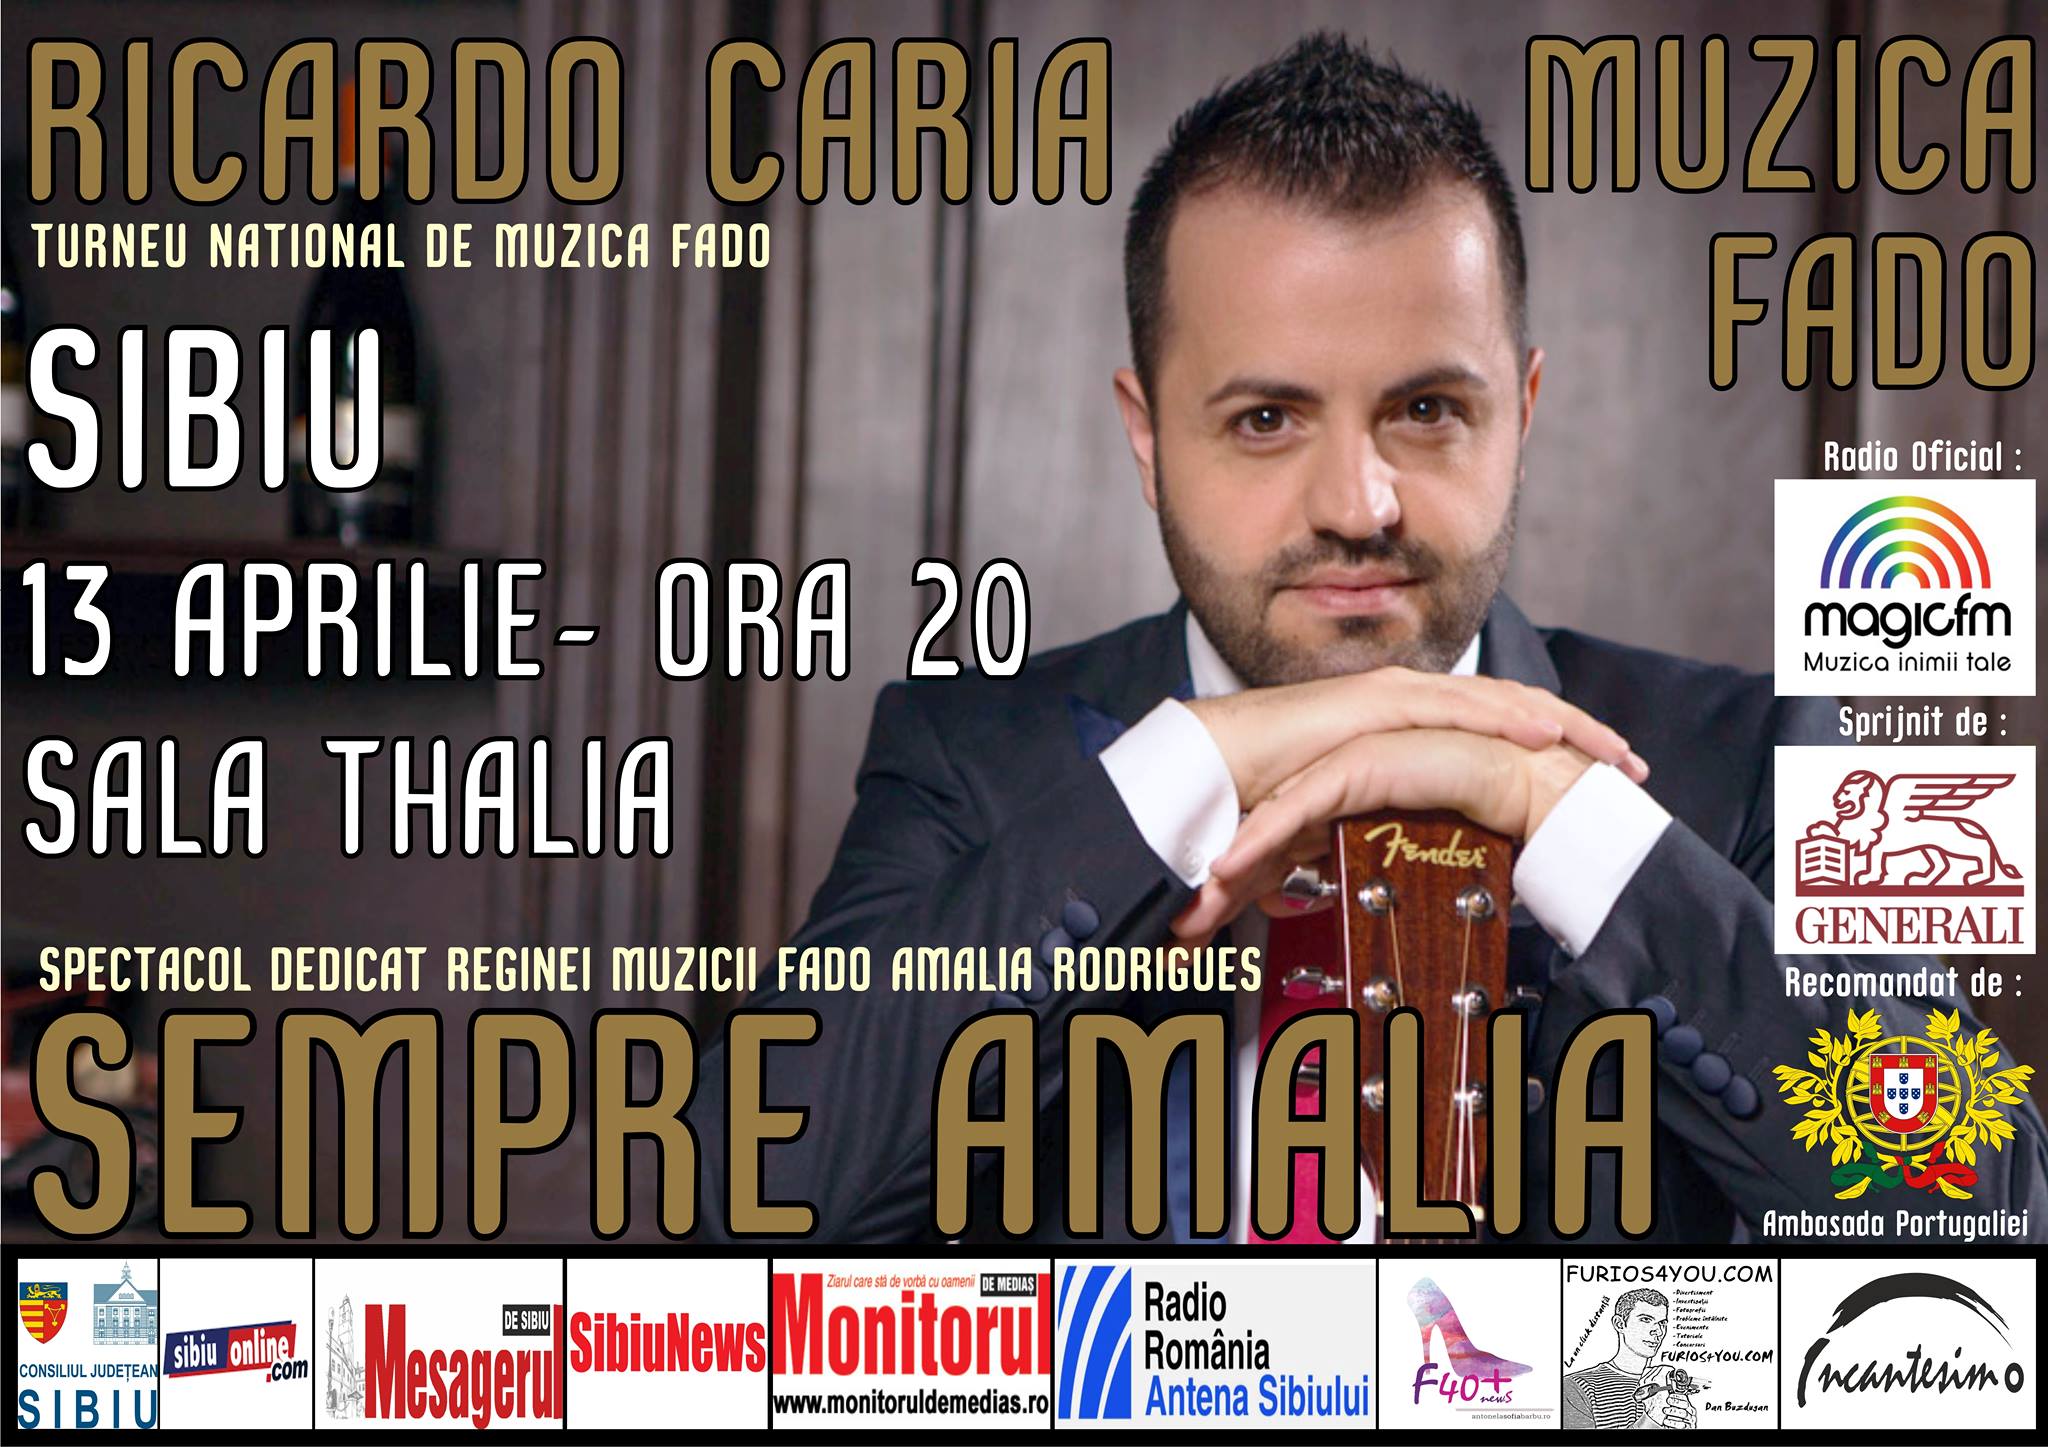 CONCURS: 2 invitatii duble la concertul „SEMPRE AMALIA ” a lui Ricardo Caria de la Sibiu